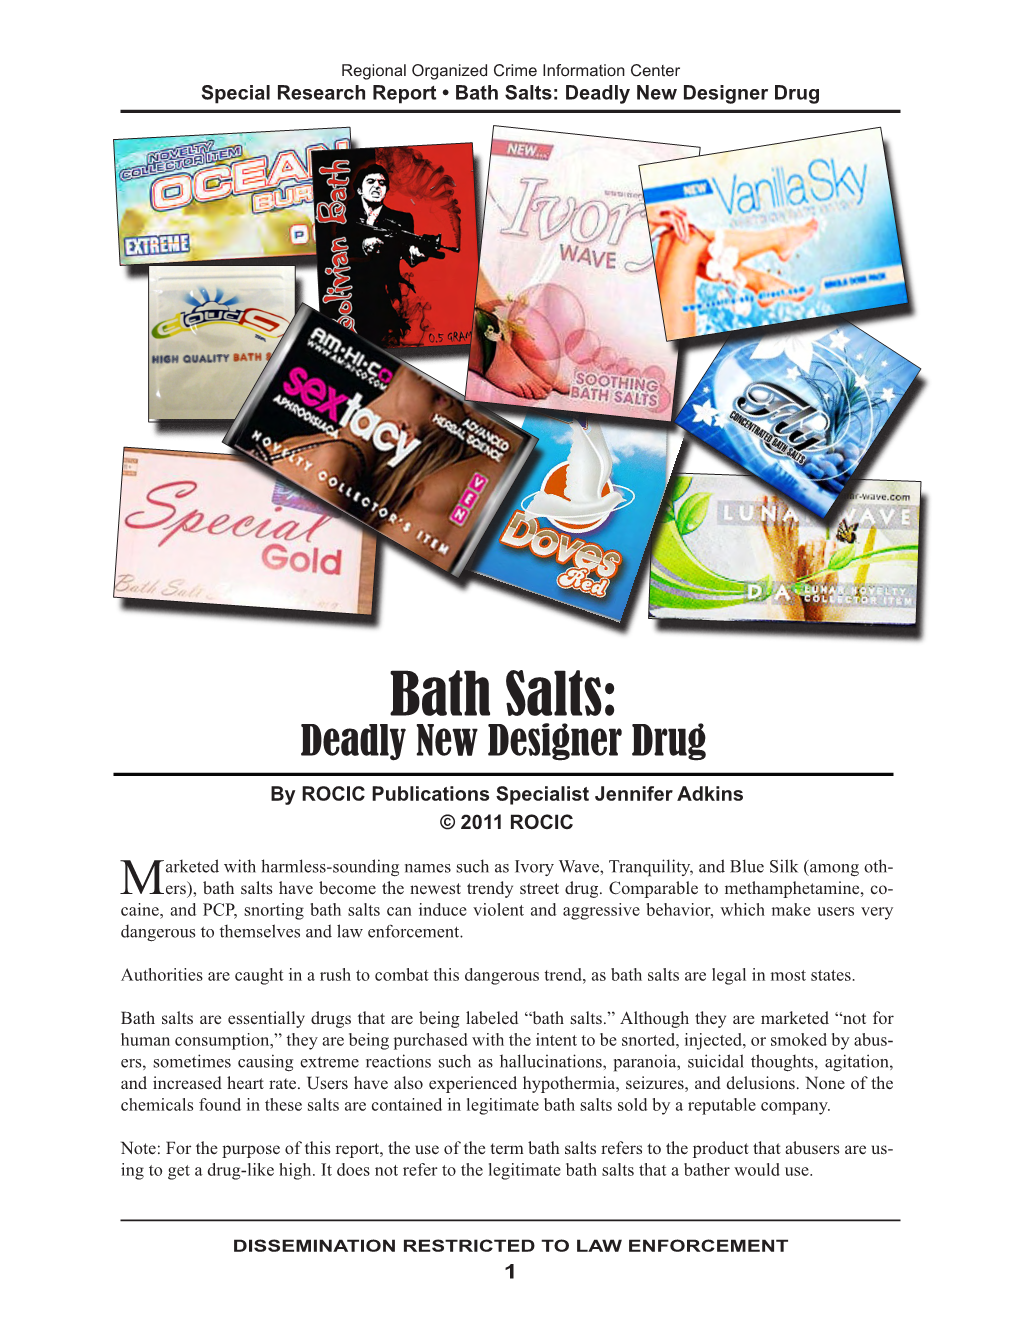 Bath Salts: Deadly New Designer Drug